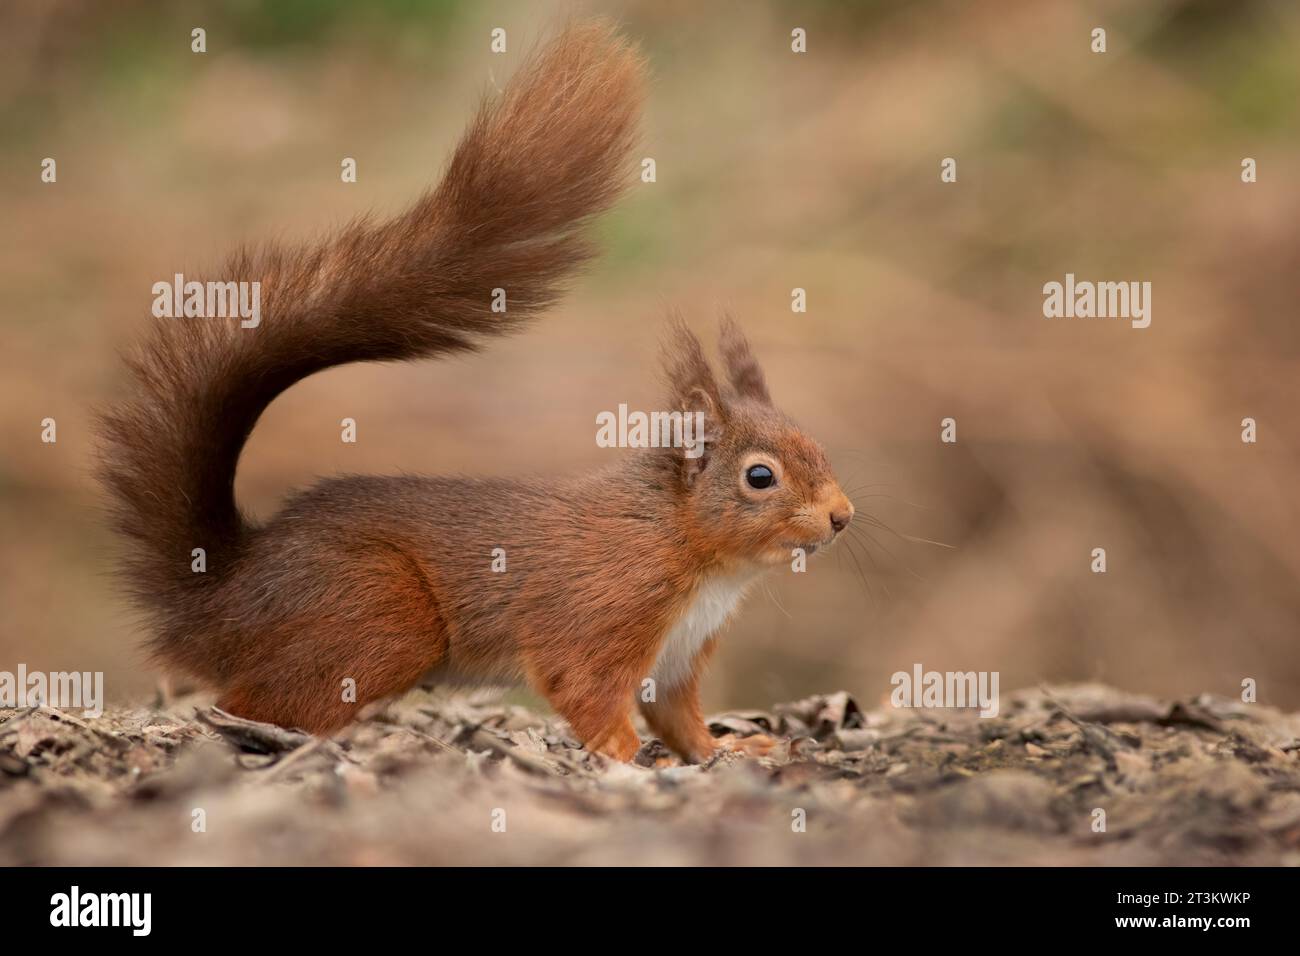 Eine Nahaufnahme eines roten Eichhörnchens mit Ohrbüscheln. Er wird vom Boden aus aufgenommen und zeigt seinen buschigen Schwanz. Ein natürlicher, unscharfer Hintergrund-Textraum Stockfoto